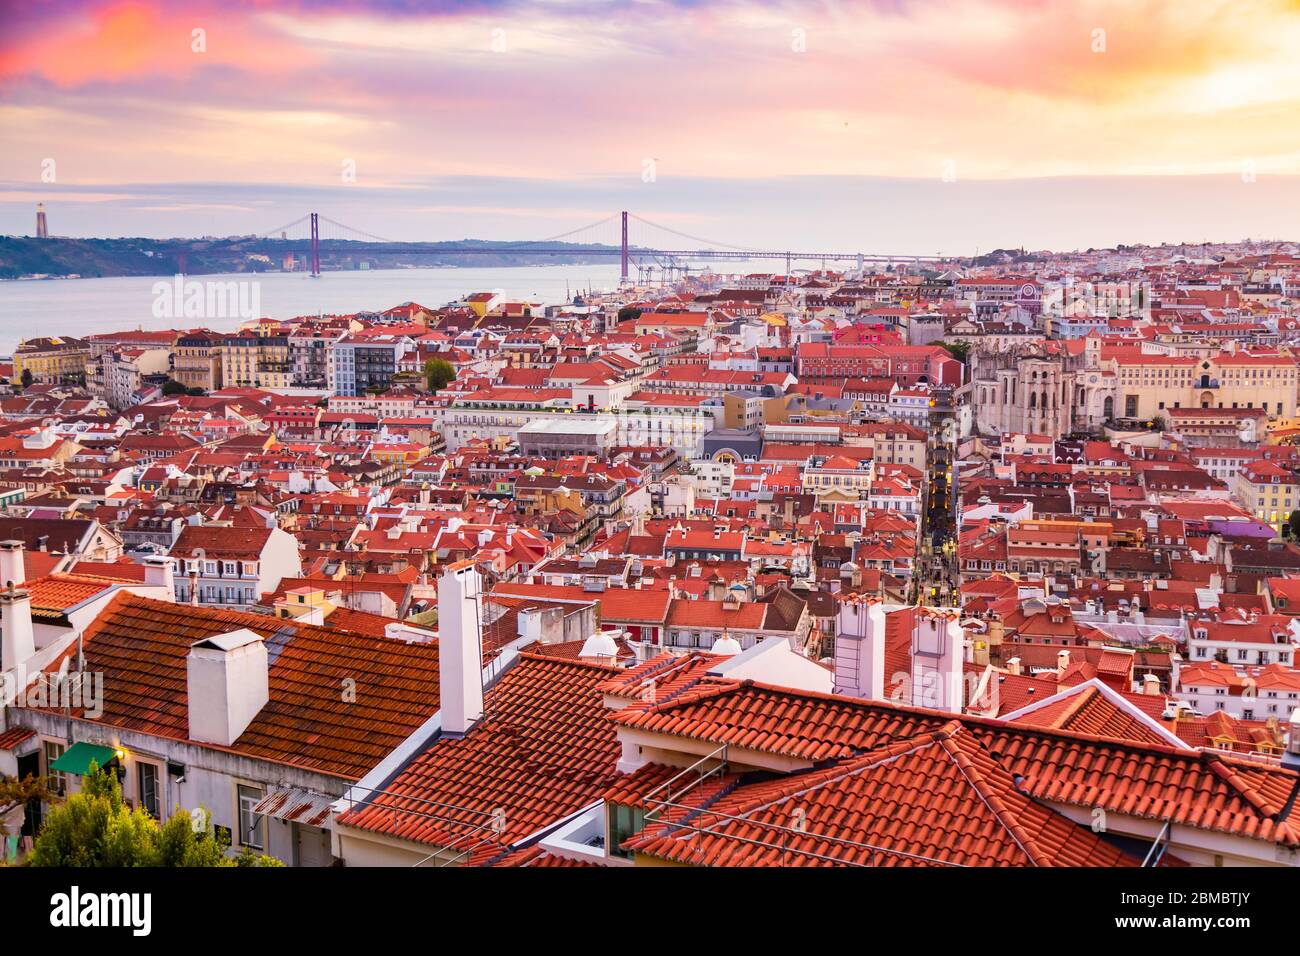 Bellissimo panorama della città vecchia e del quartiere Baixa a Lisbona durante il tramonto, visto dalla collina del Castello di Sao Jorge, Portogallo Foto Stock